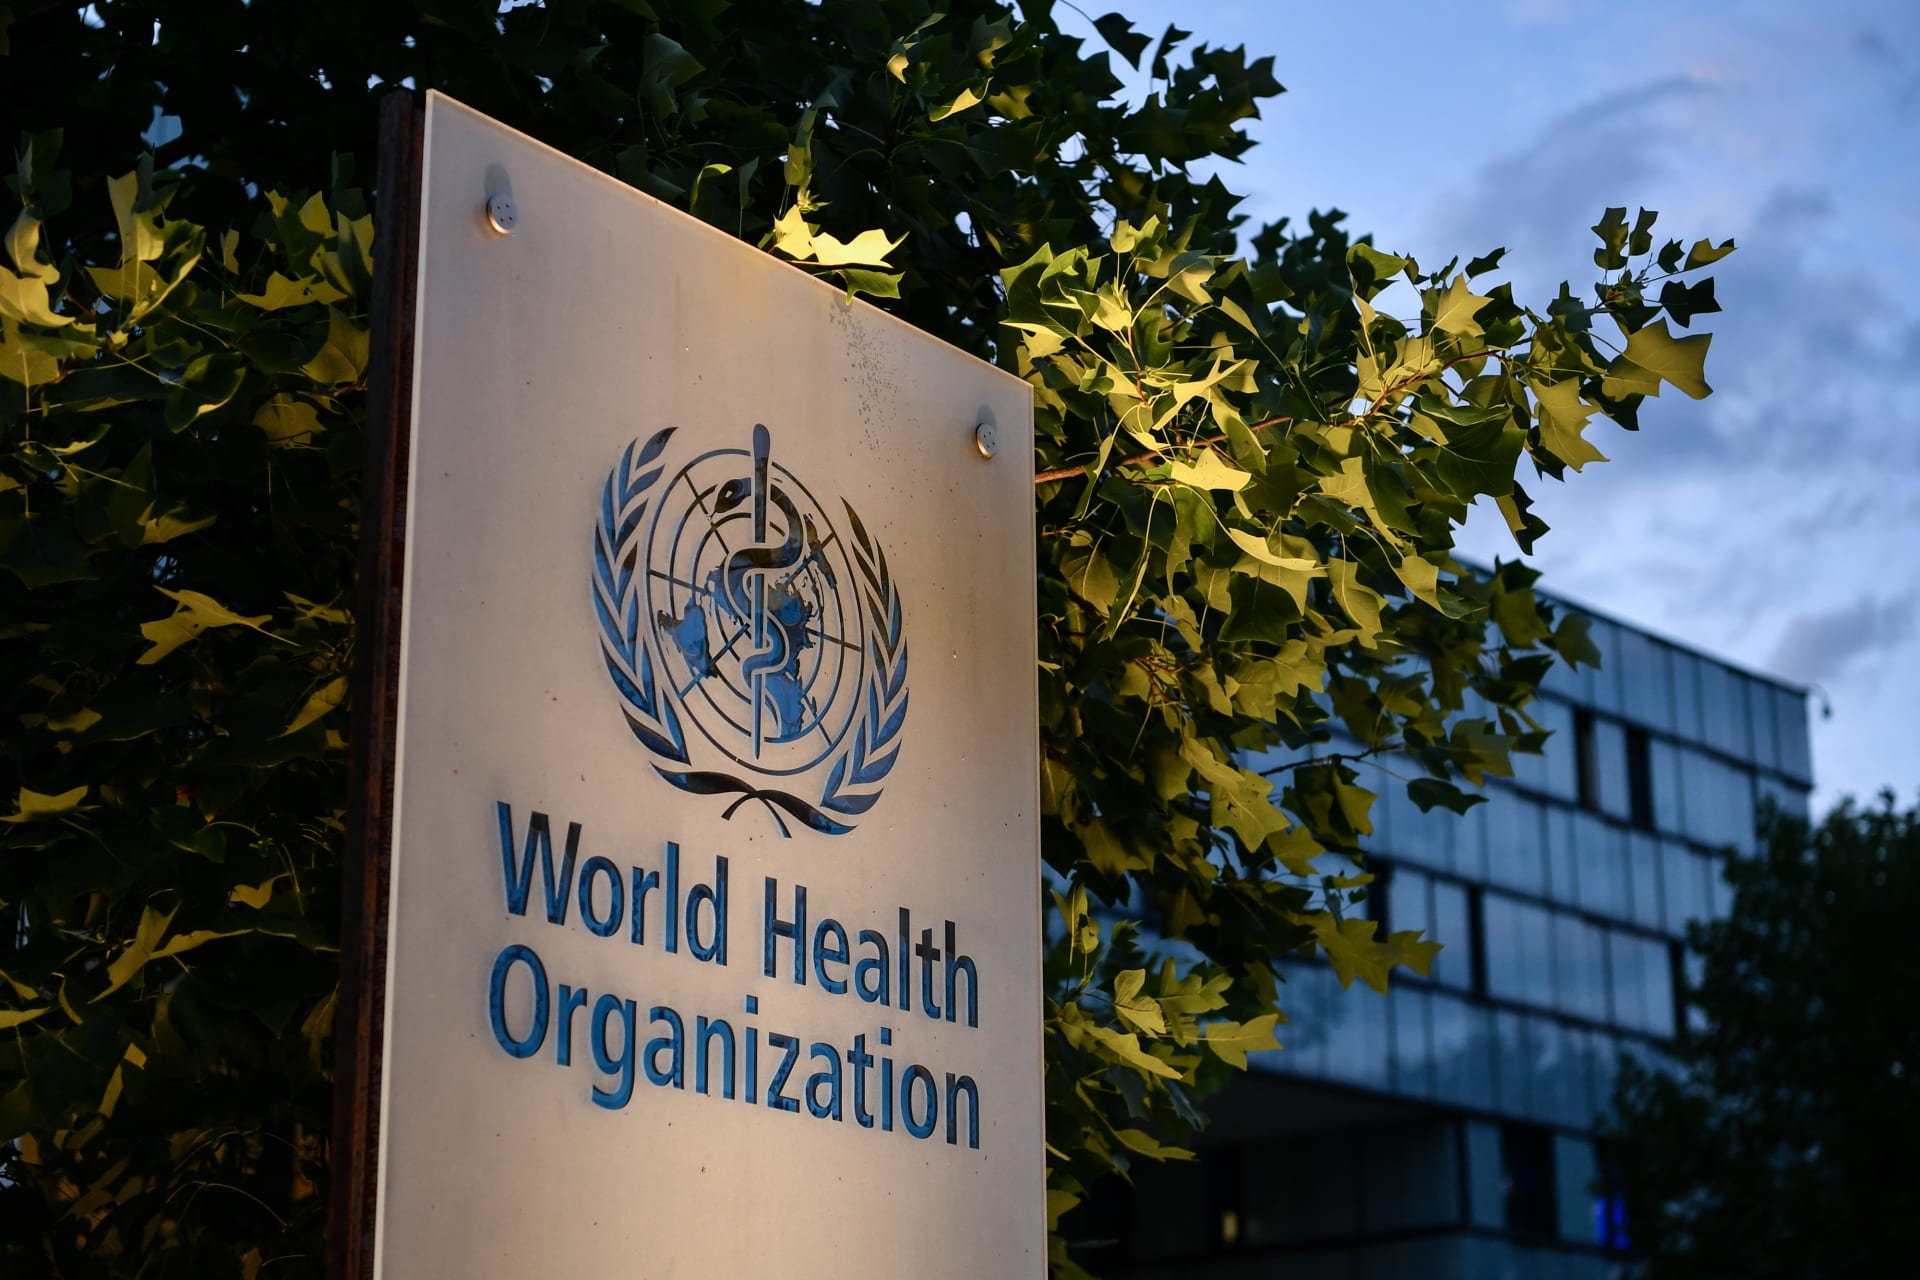  منظمة الصحة العالمية تؤكد أن الصحة حق من حقوق الإنسان وتطالب باتخاذ إجراءات للحد من أوجه انعدام العدالة في الصحة